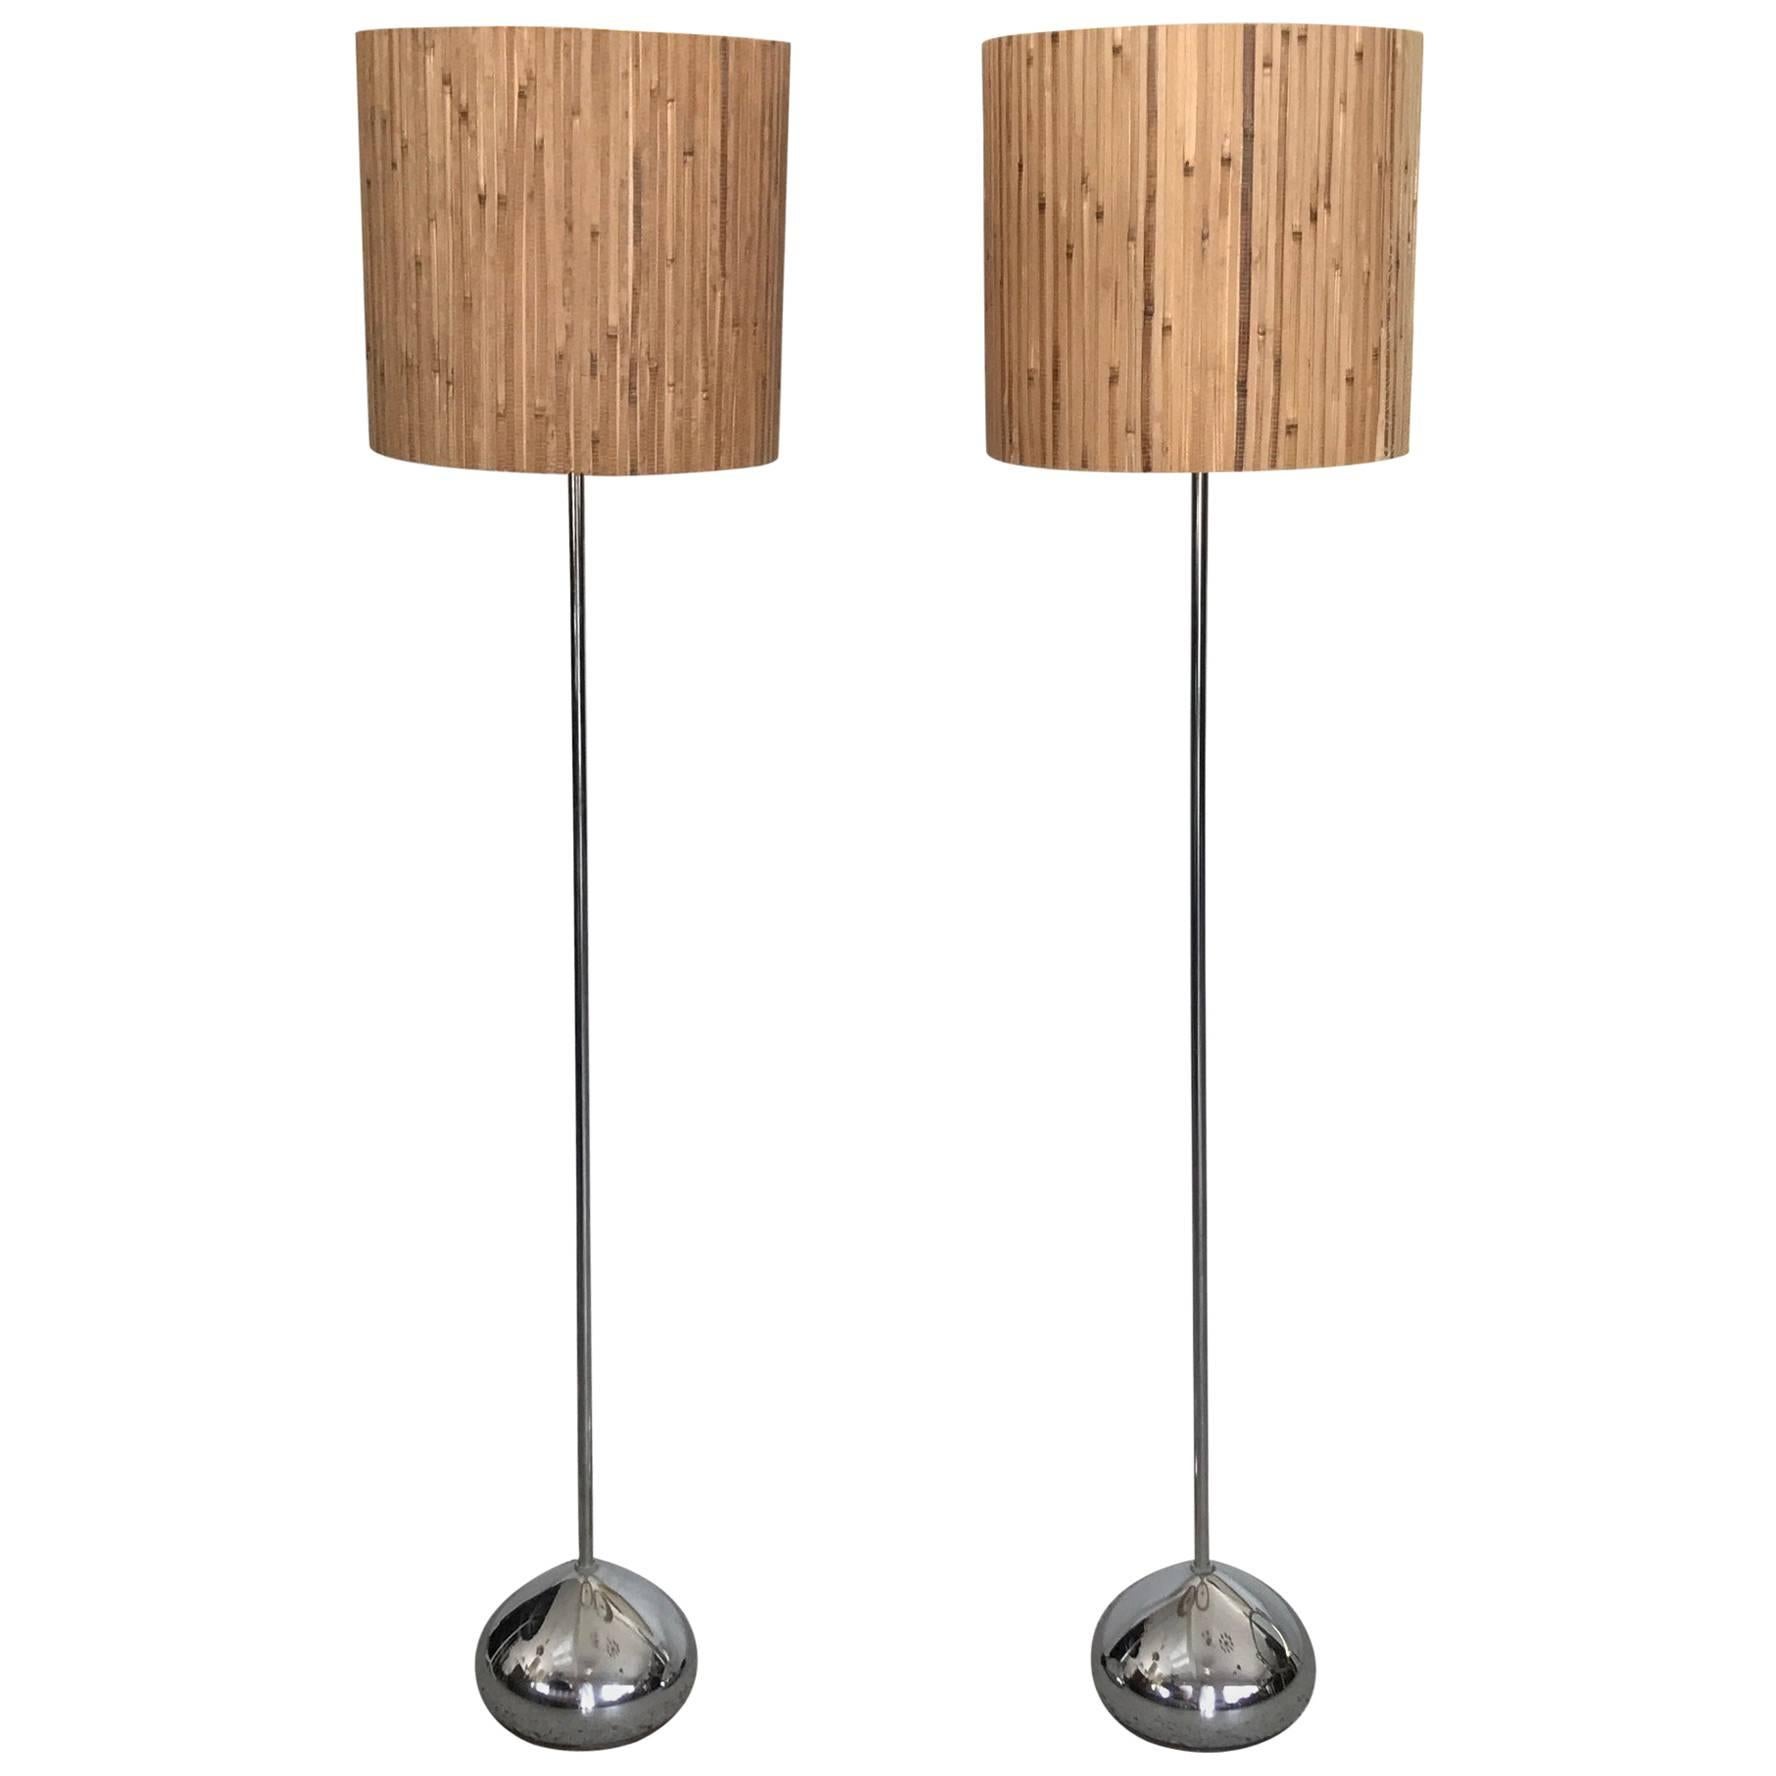 Pair of Unusual George Kovacs Floor Lamps